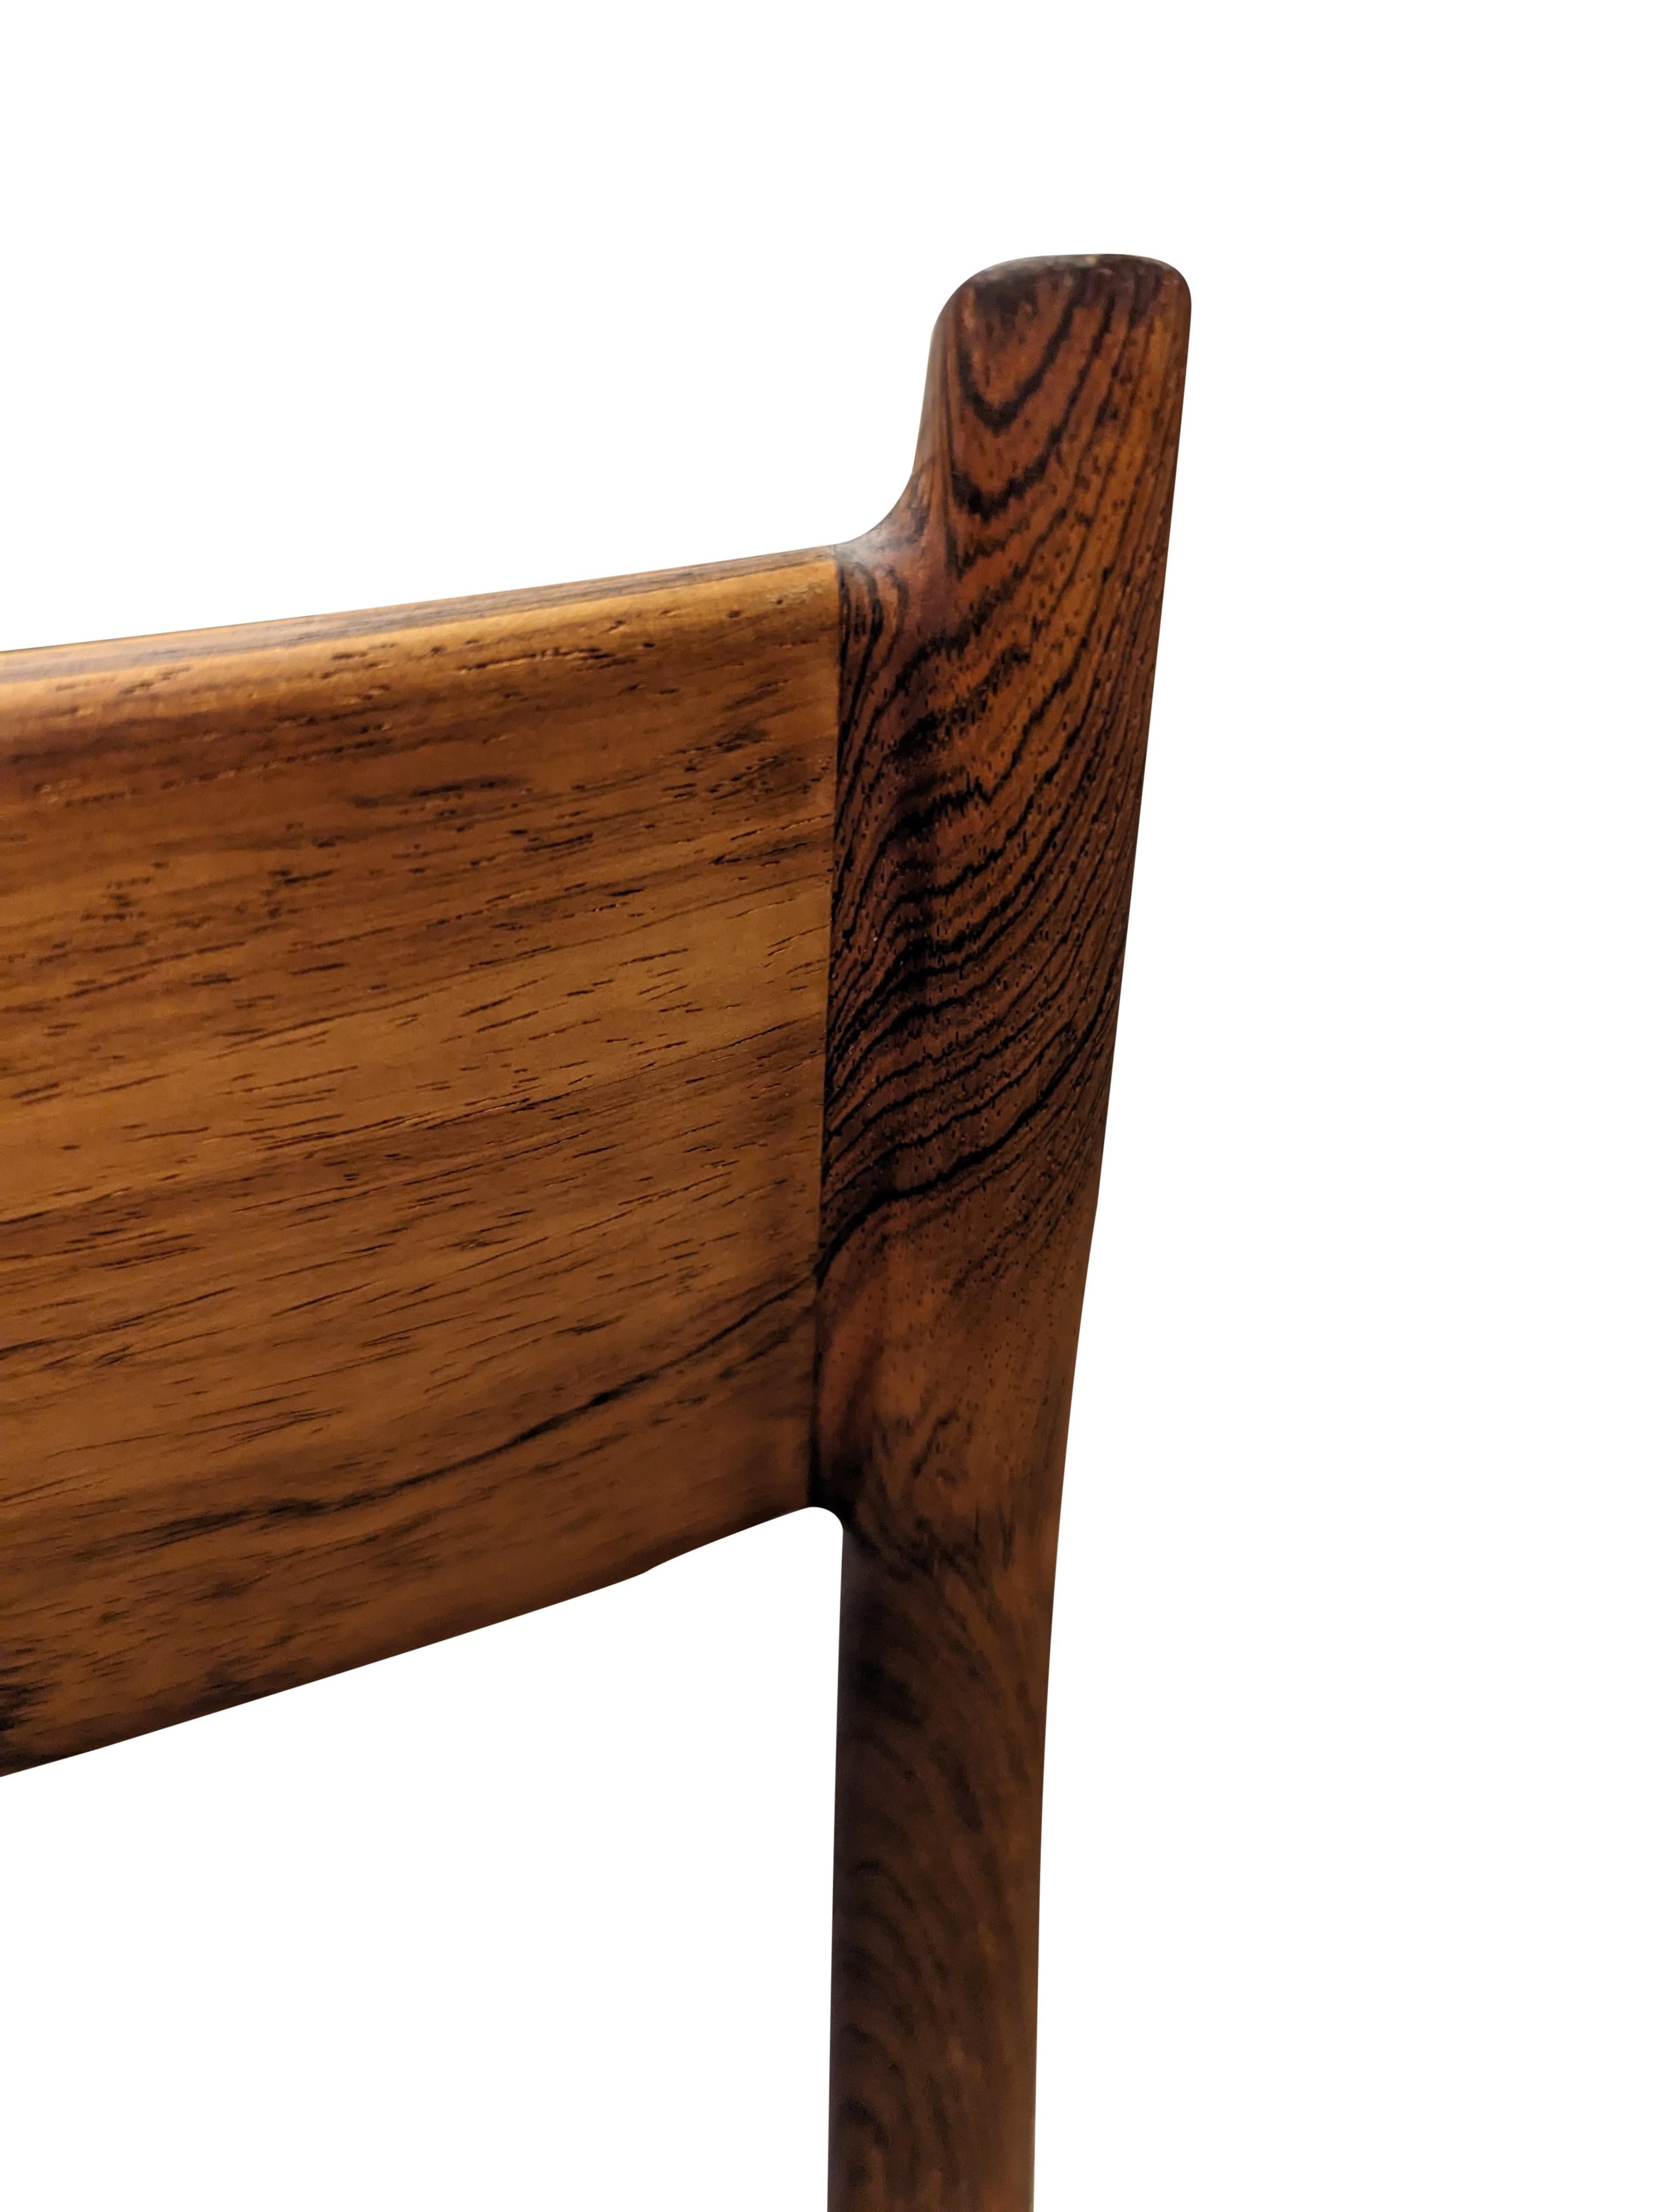 Vintage Danish Arne Vodder for Sibast Mobler Rosewood Dining Chair - 082316 For Sale 3